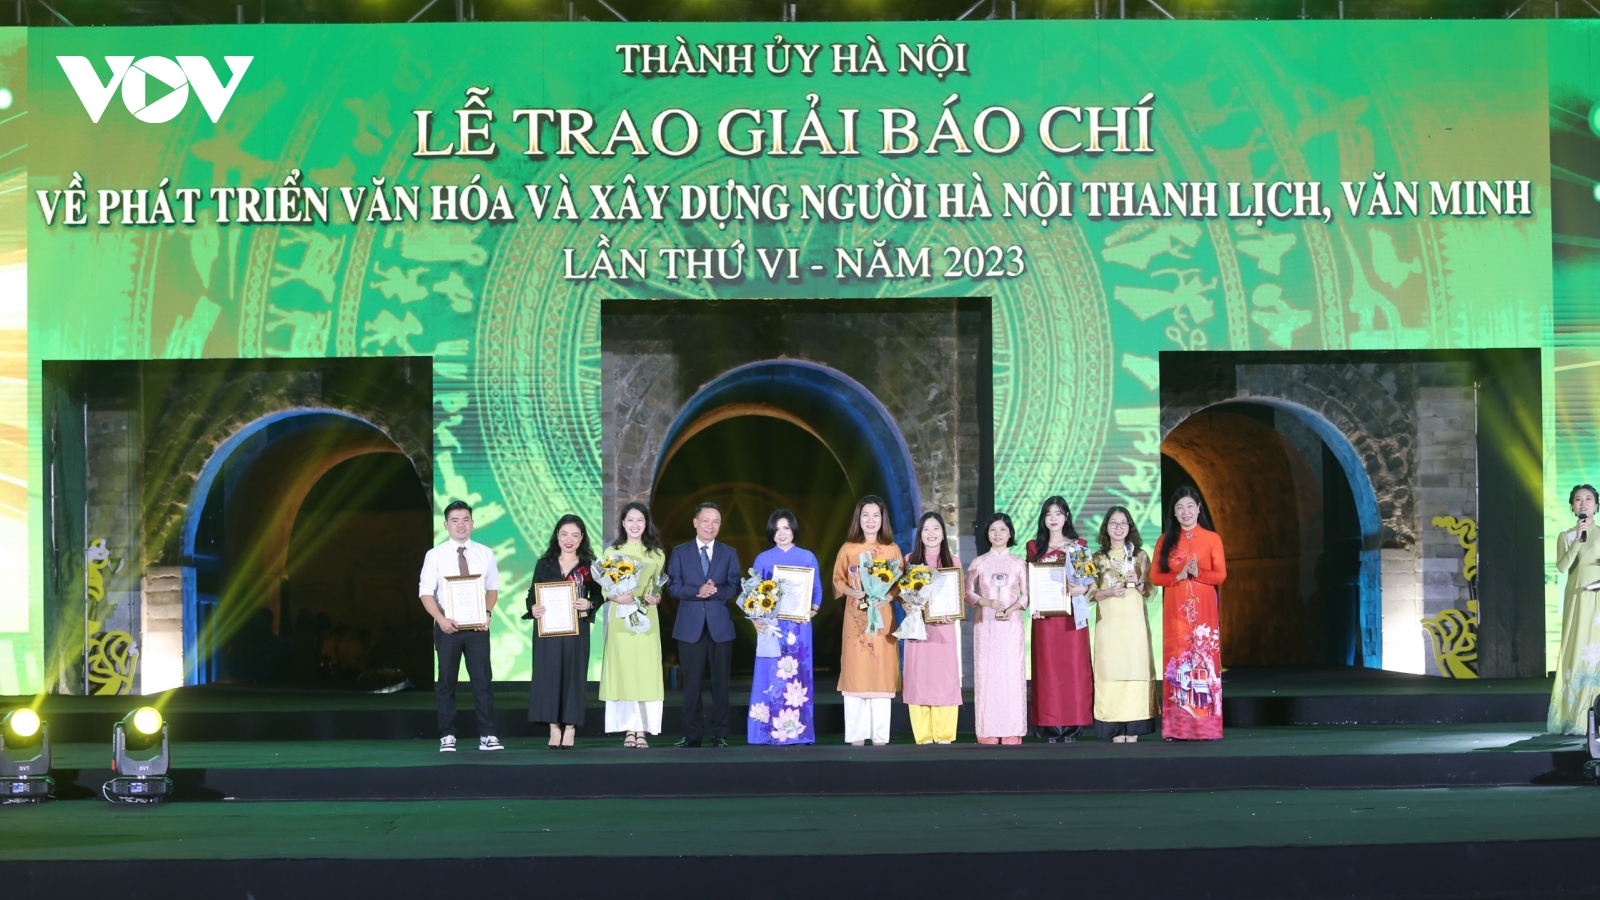 33 tác phẩm xuất sắc được trao giải báo chí về Hà Nội